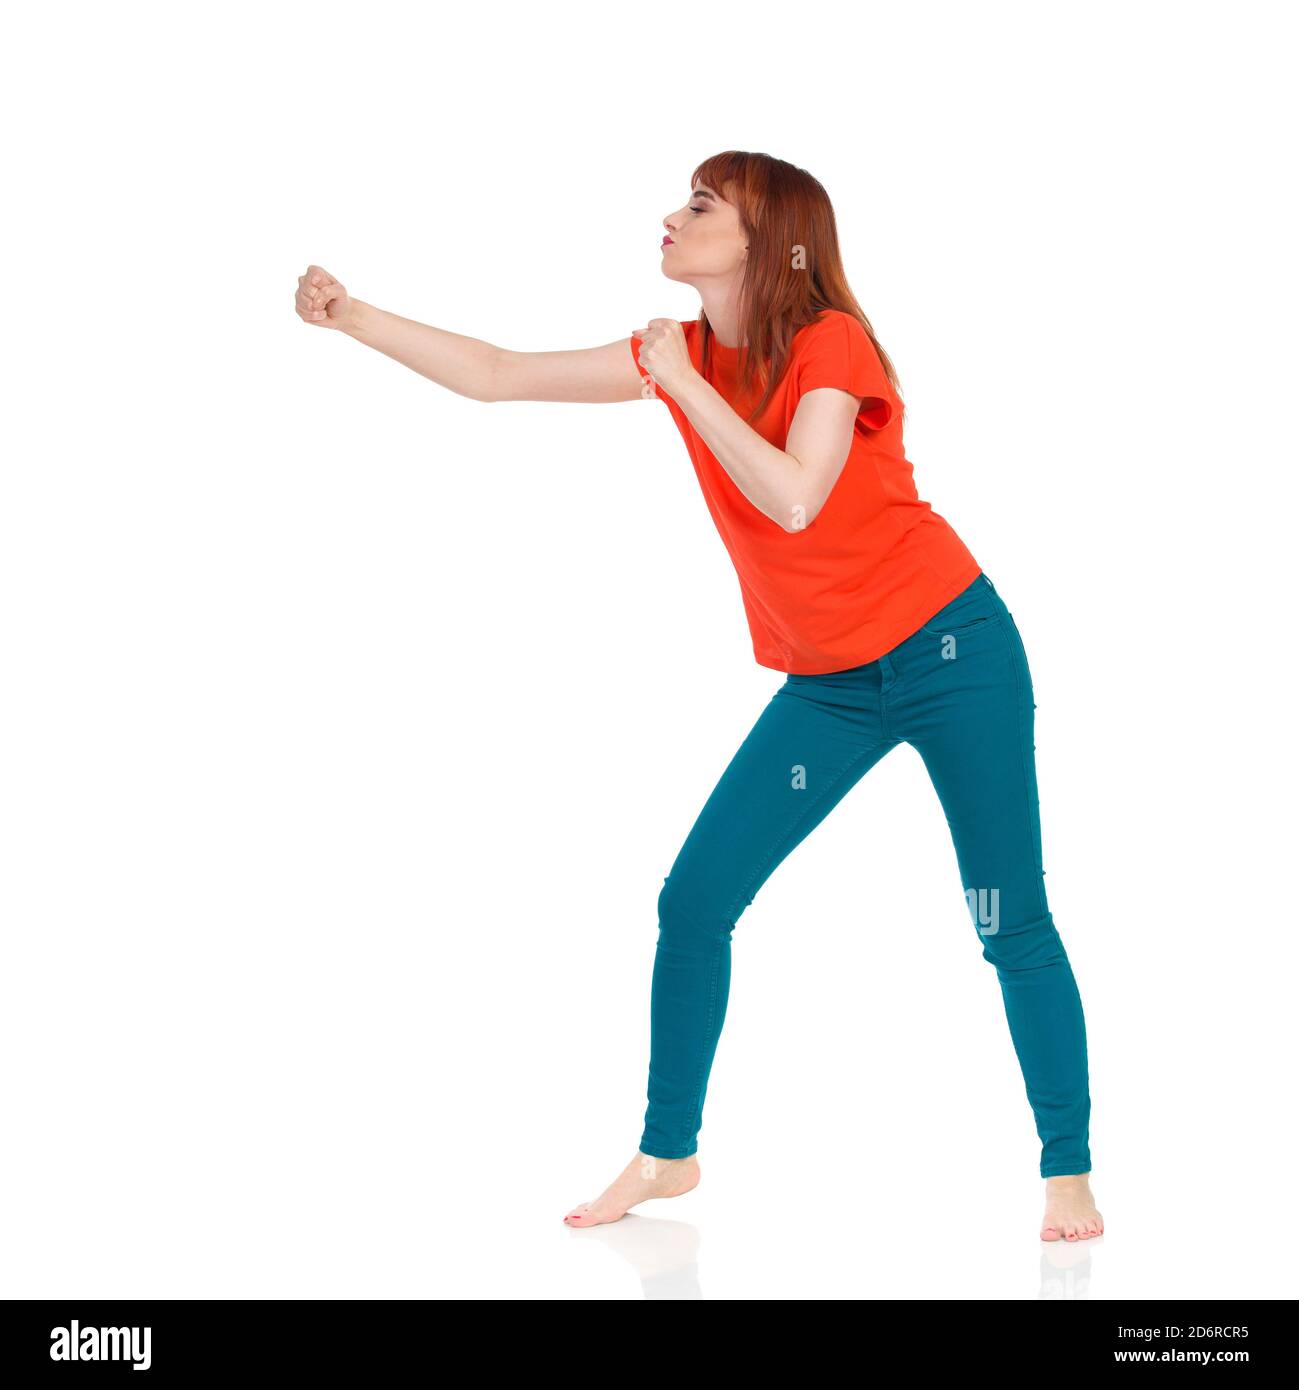 Jeune femme en t-shirt orange et, jeans vert se tient pieds nus, clenche son poing et regarde loin. Prise de vue en studio sur toute la longueur isolée sur blanc. Banque D'Images